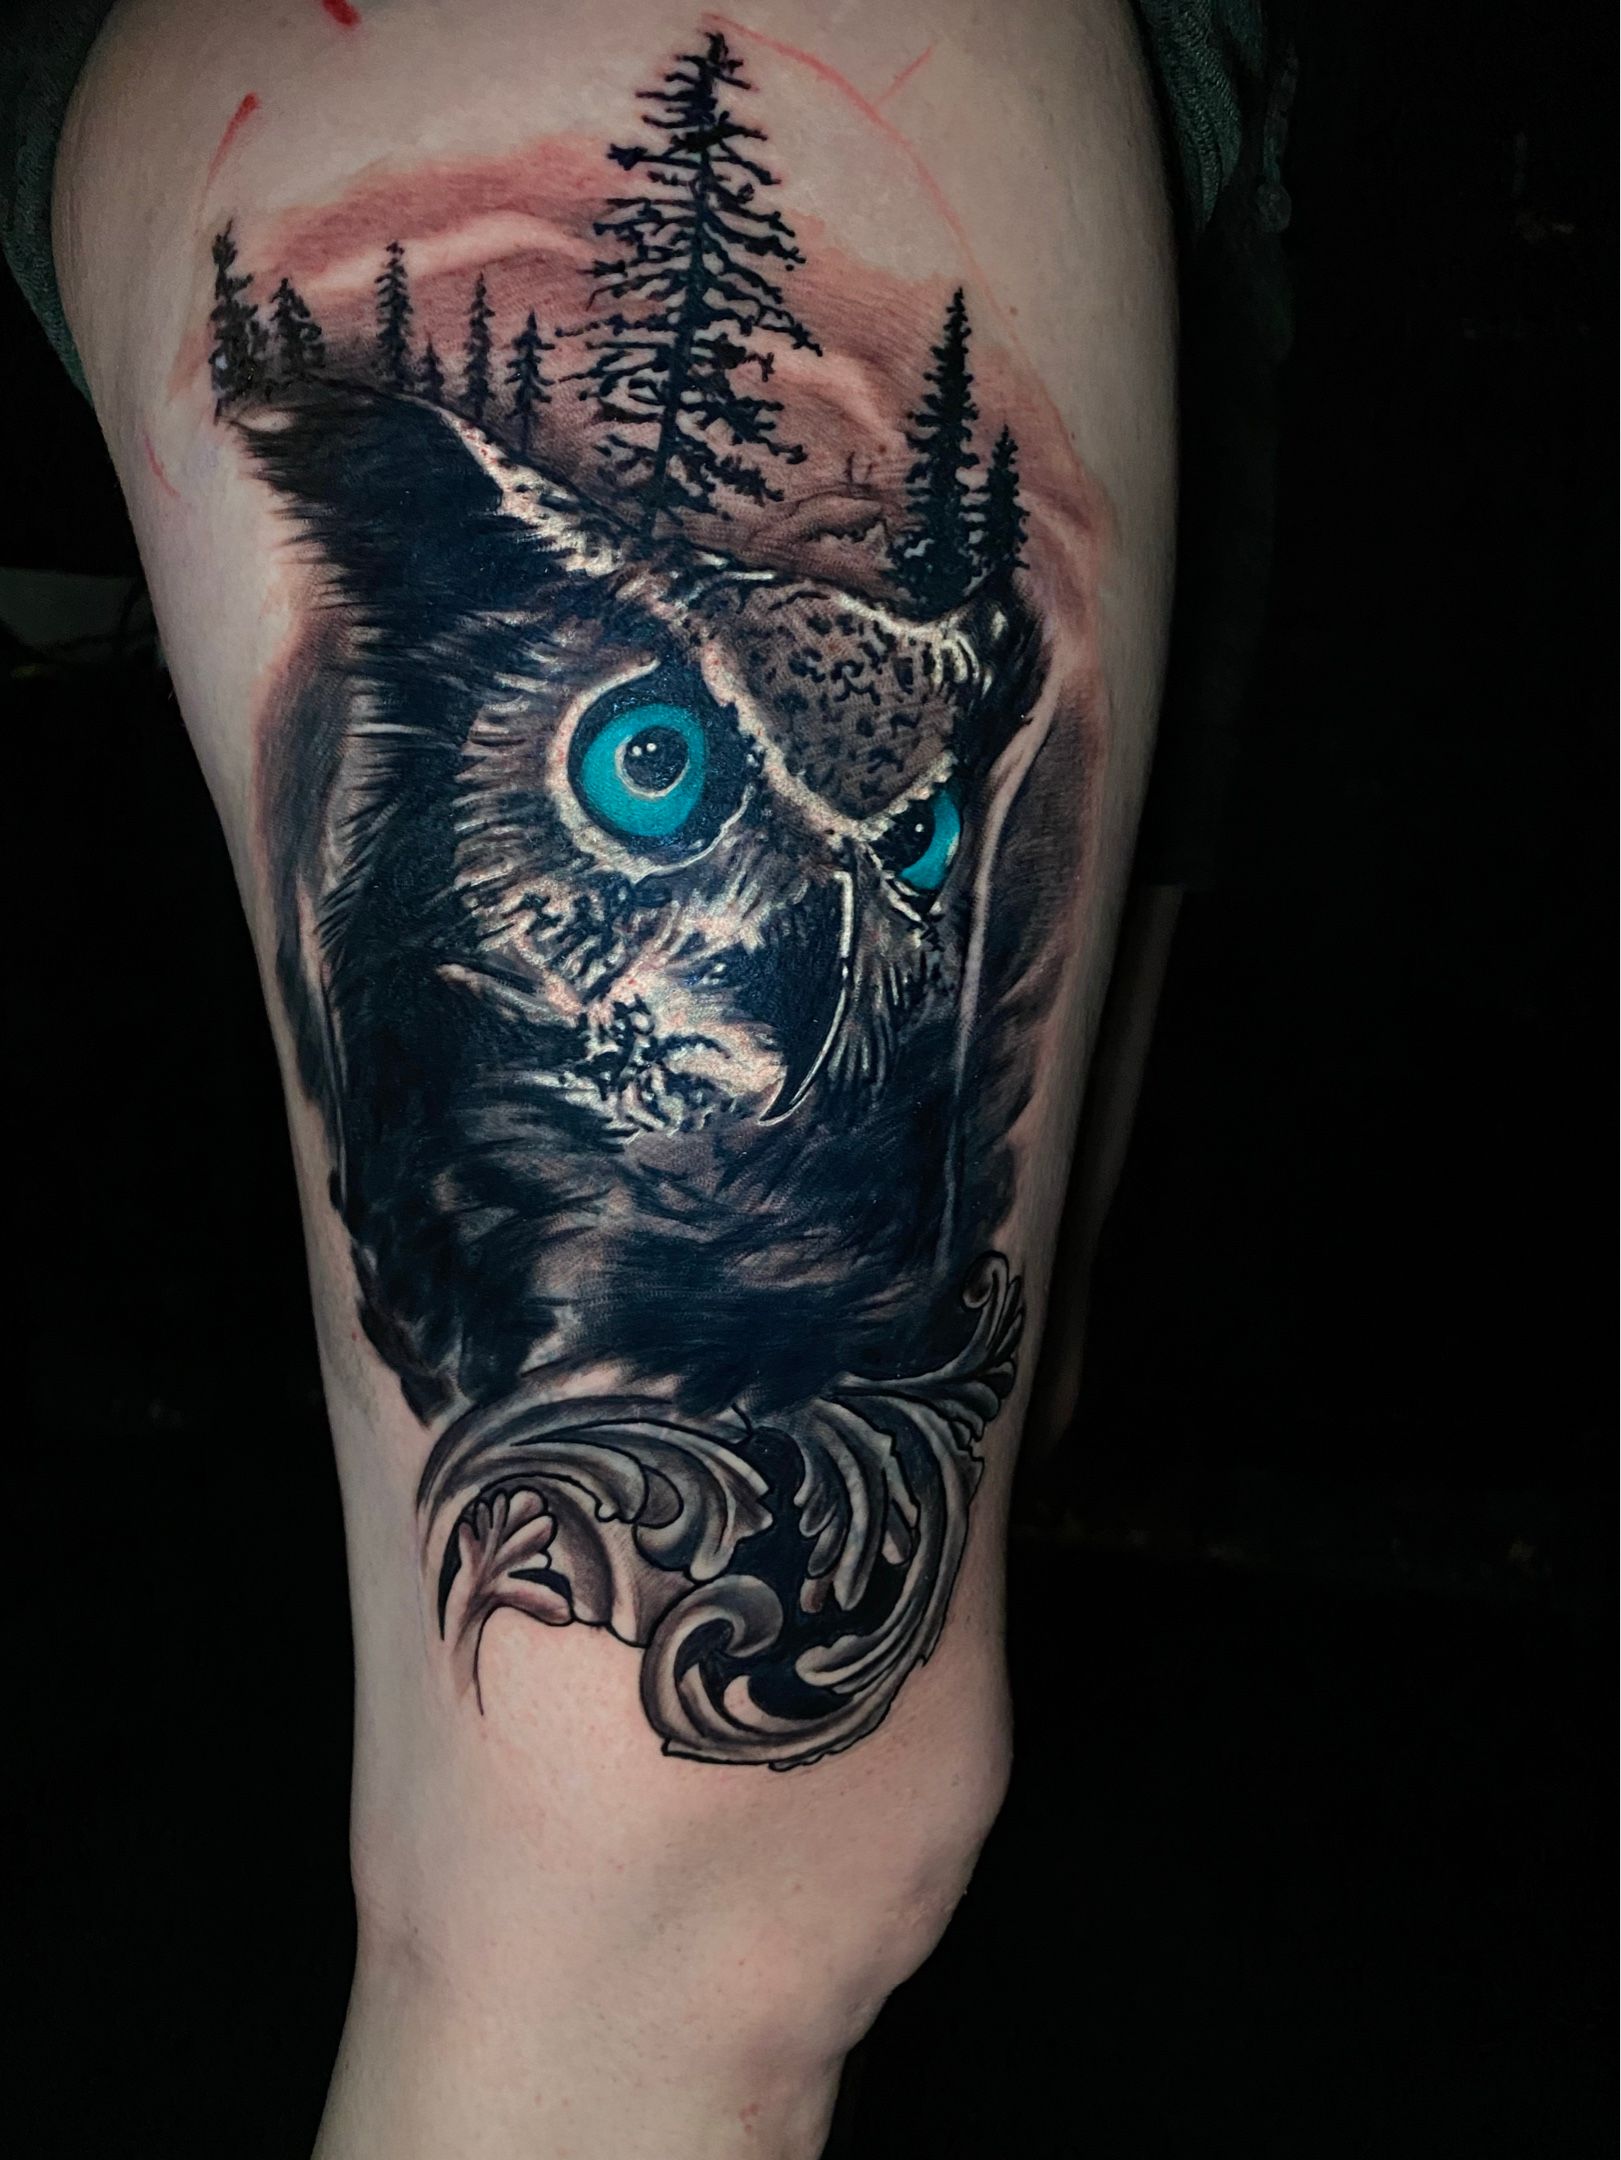 Done today  Shawn  Sinners Tattoo Studio in Rowlett Tx   rTattooApprentice